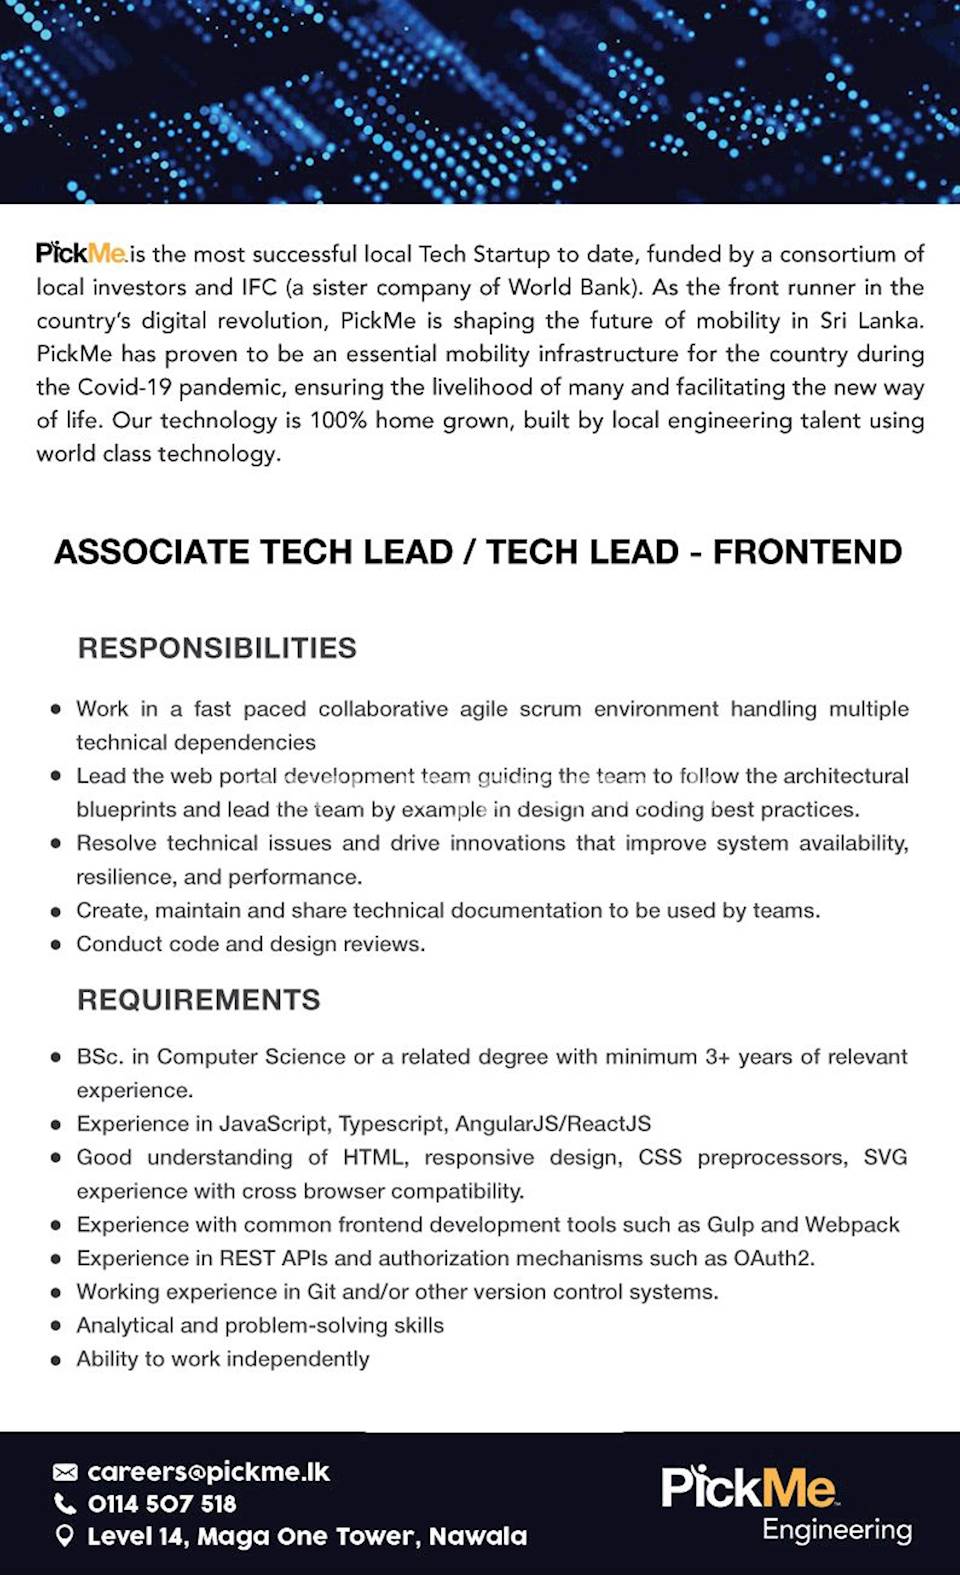 Associate Tech Lead / Tech Lead - Frontend